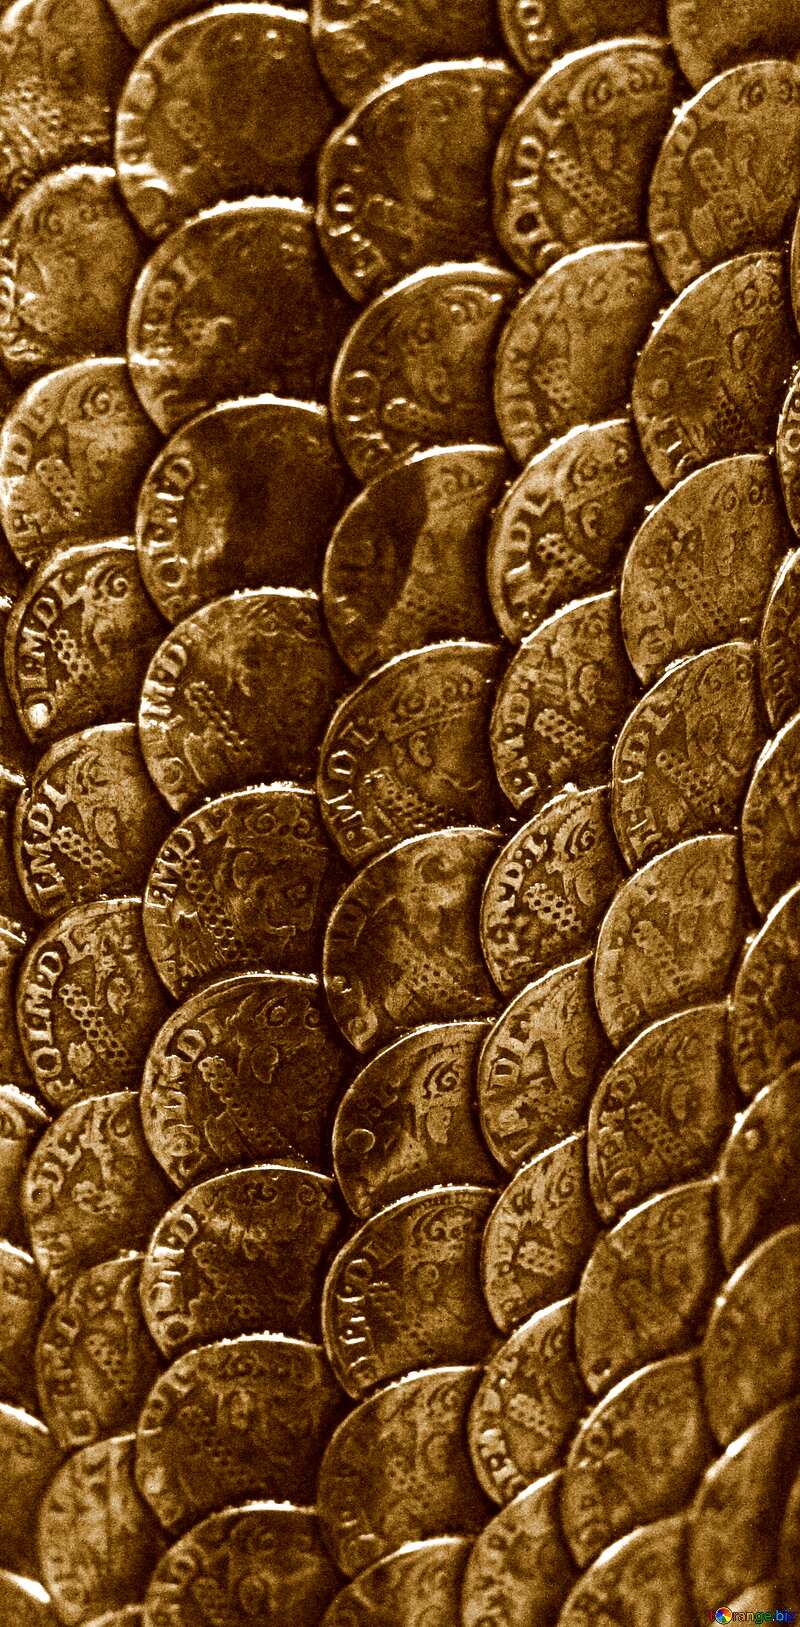 Monochrome. Texture coins. №43422